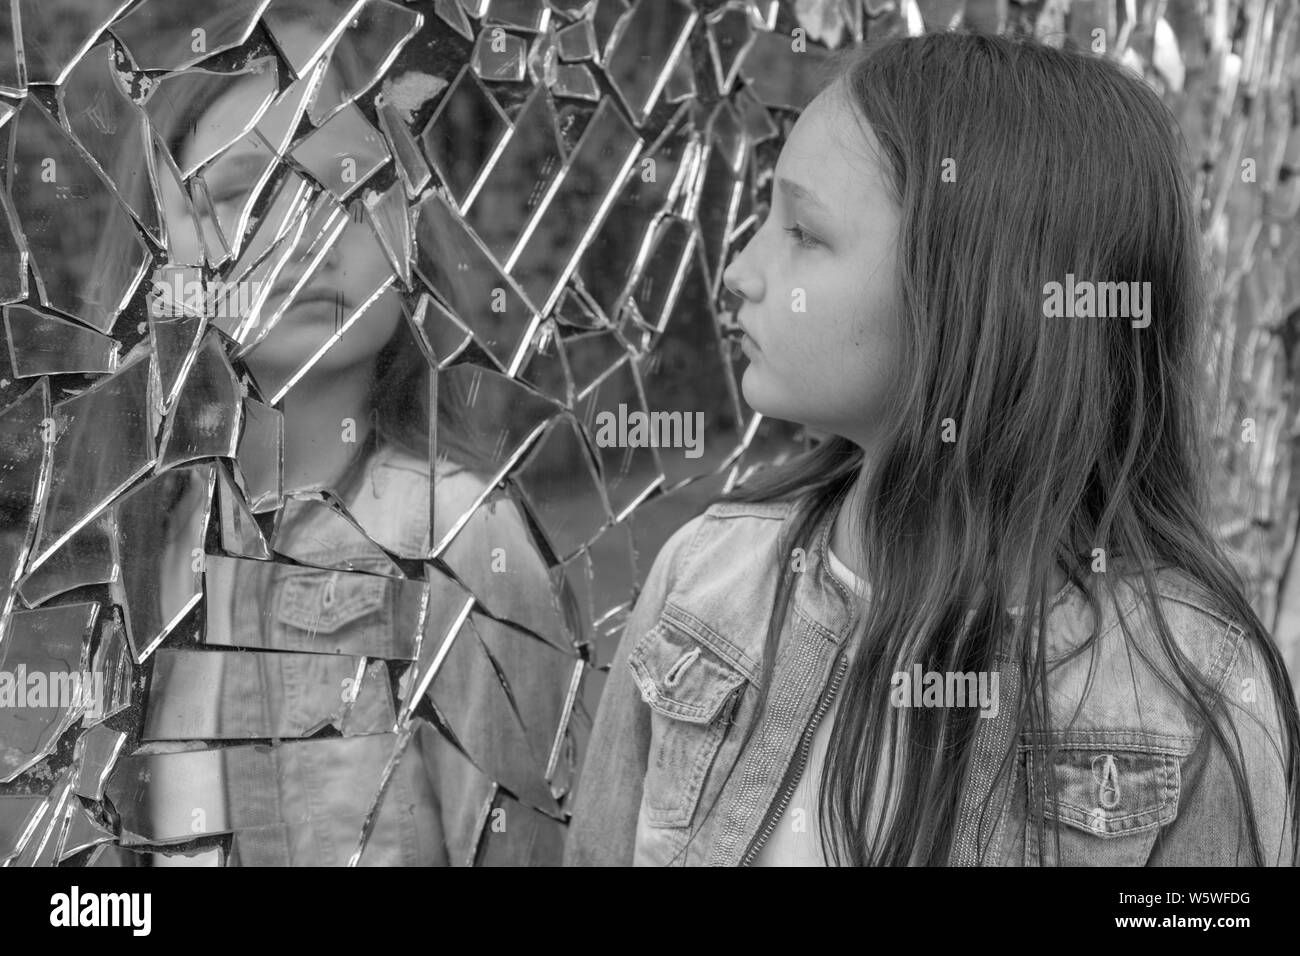 Jeune fille lycéenne l'air triste dans le miroir brisé. Photo en noir et blanc. Banque D'Images